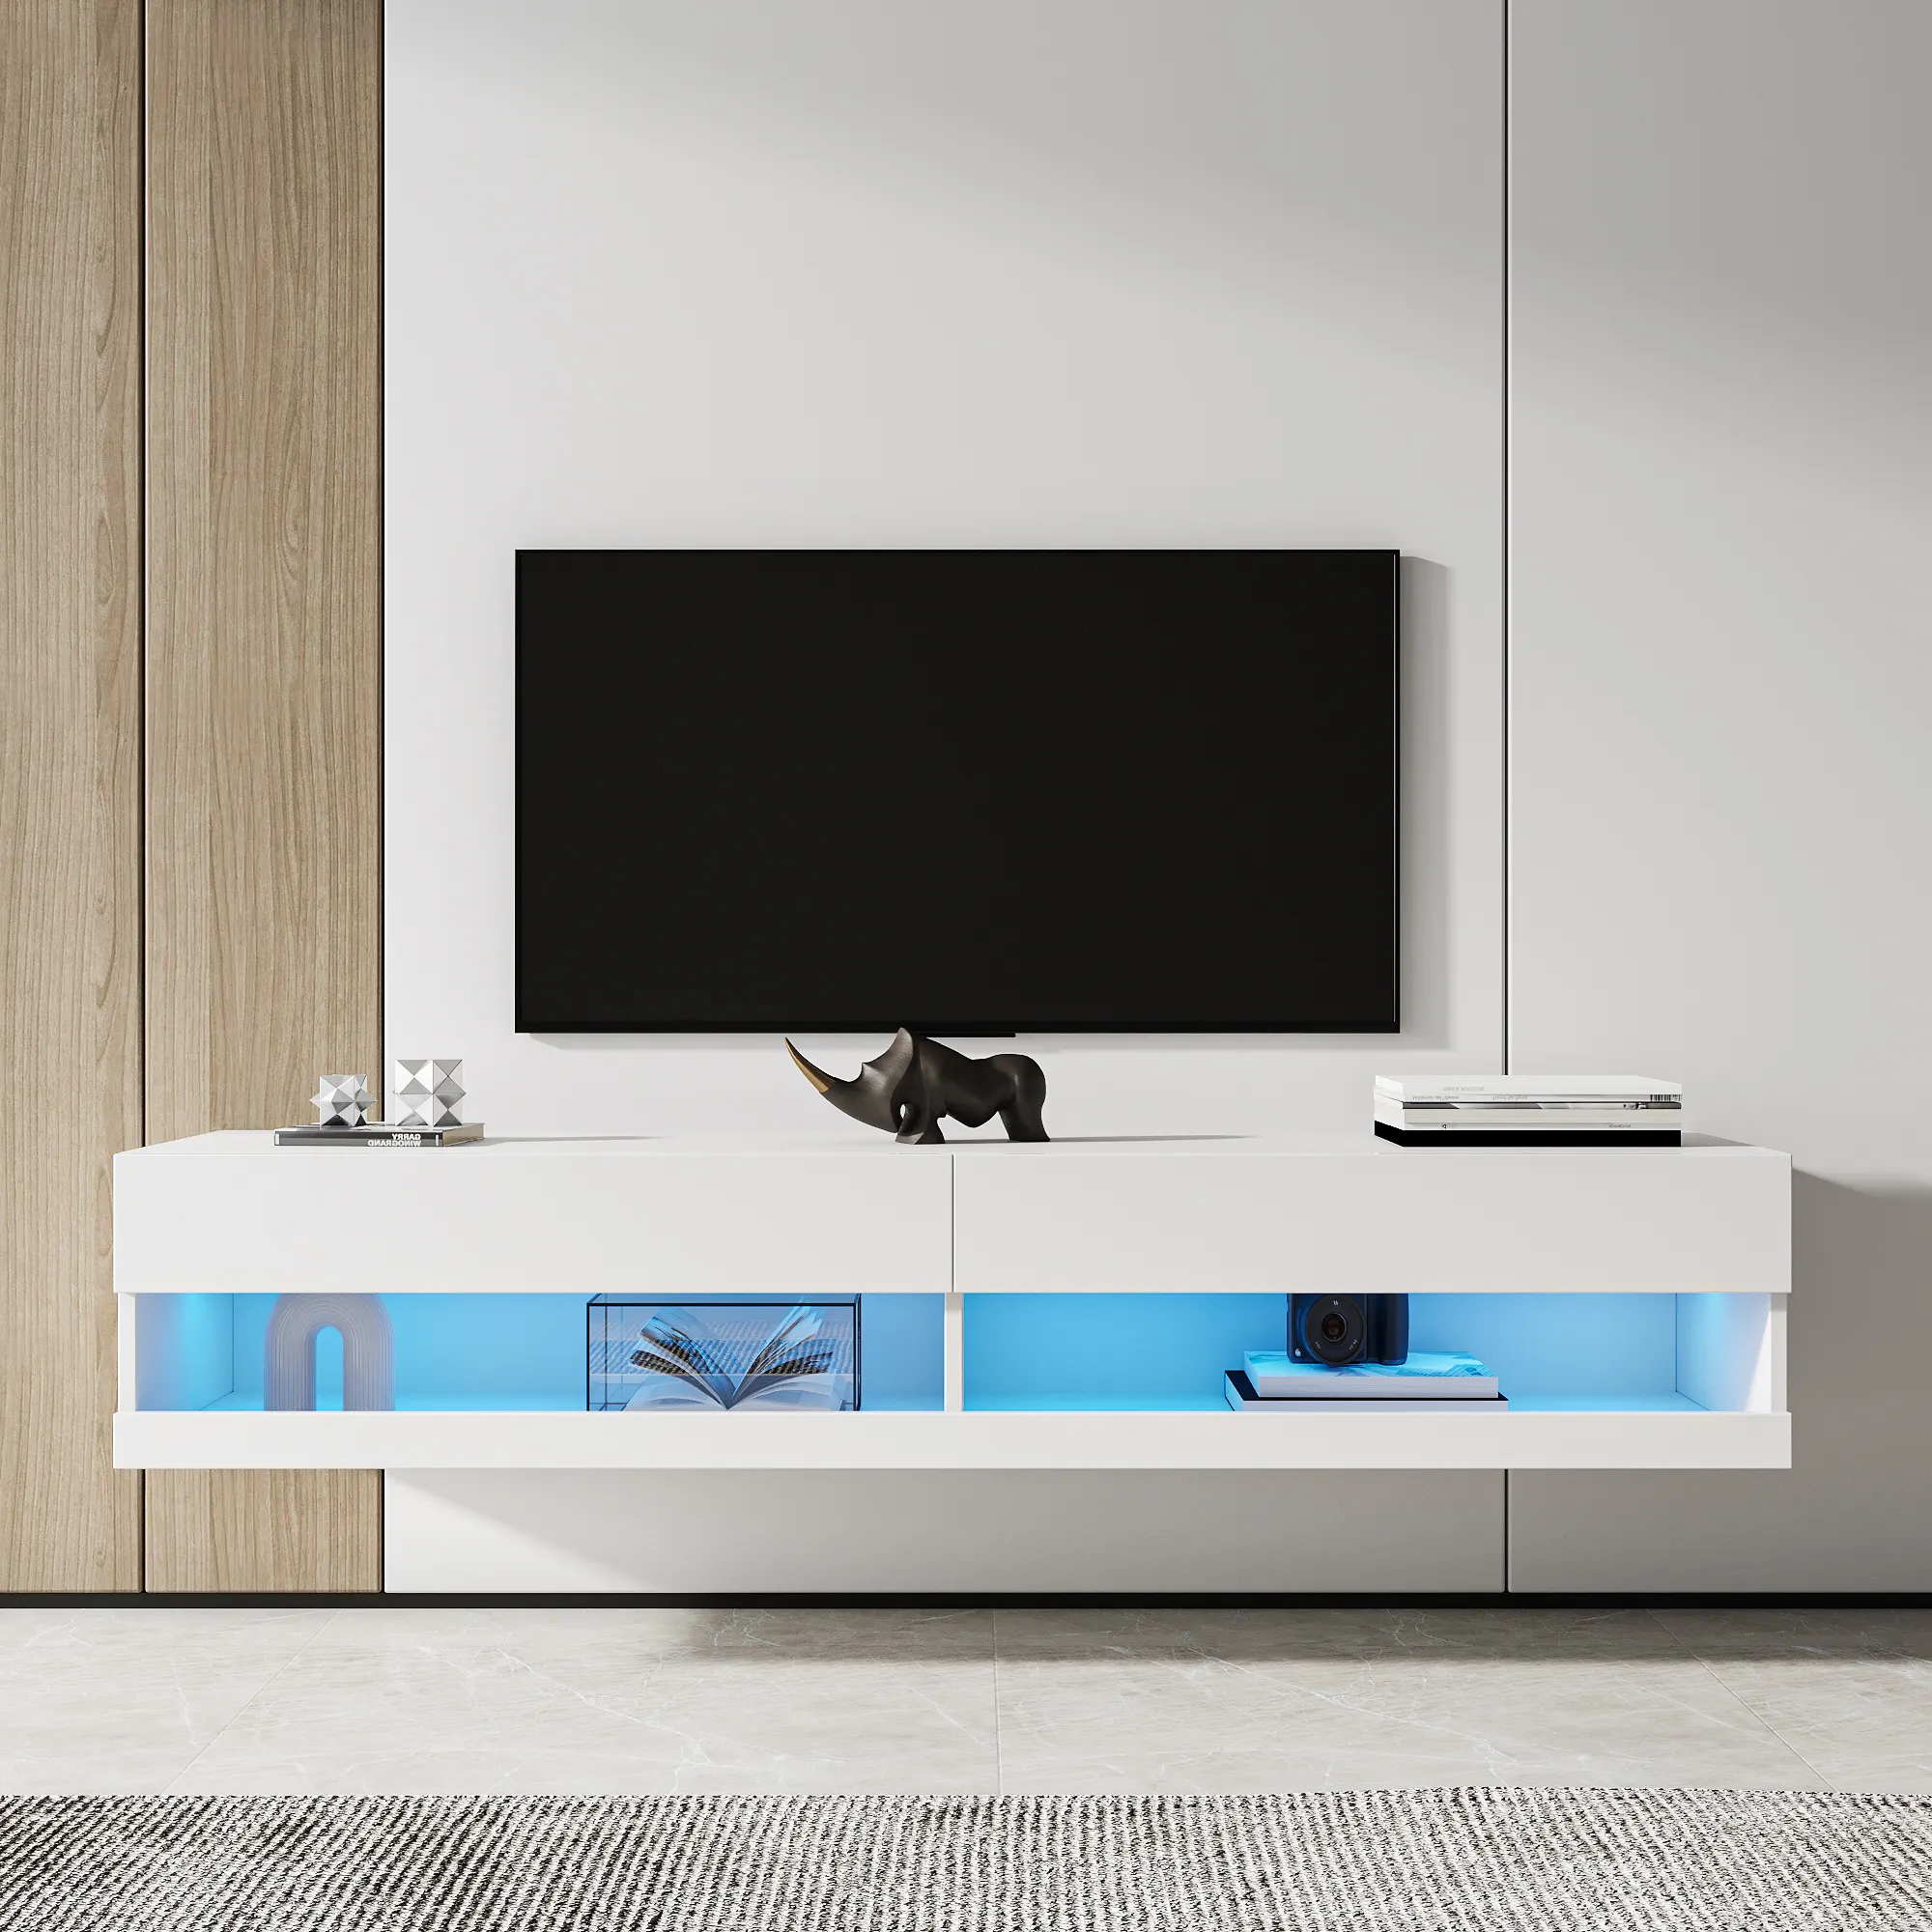 Mueble de TV flotante moderno soporte de TV Meuble de madera Moderne de madera mesas de Centro Soporte de TV para sala de estar